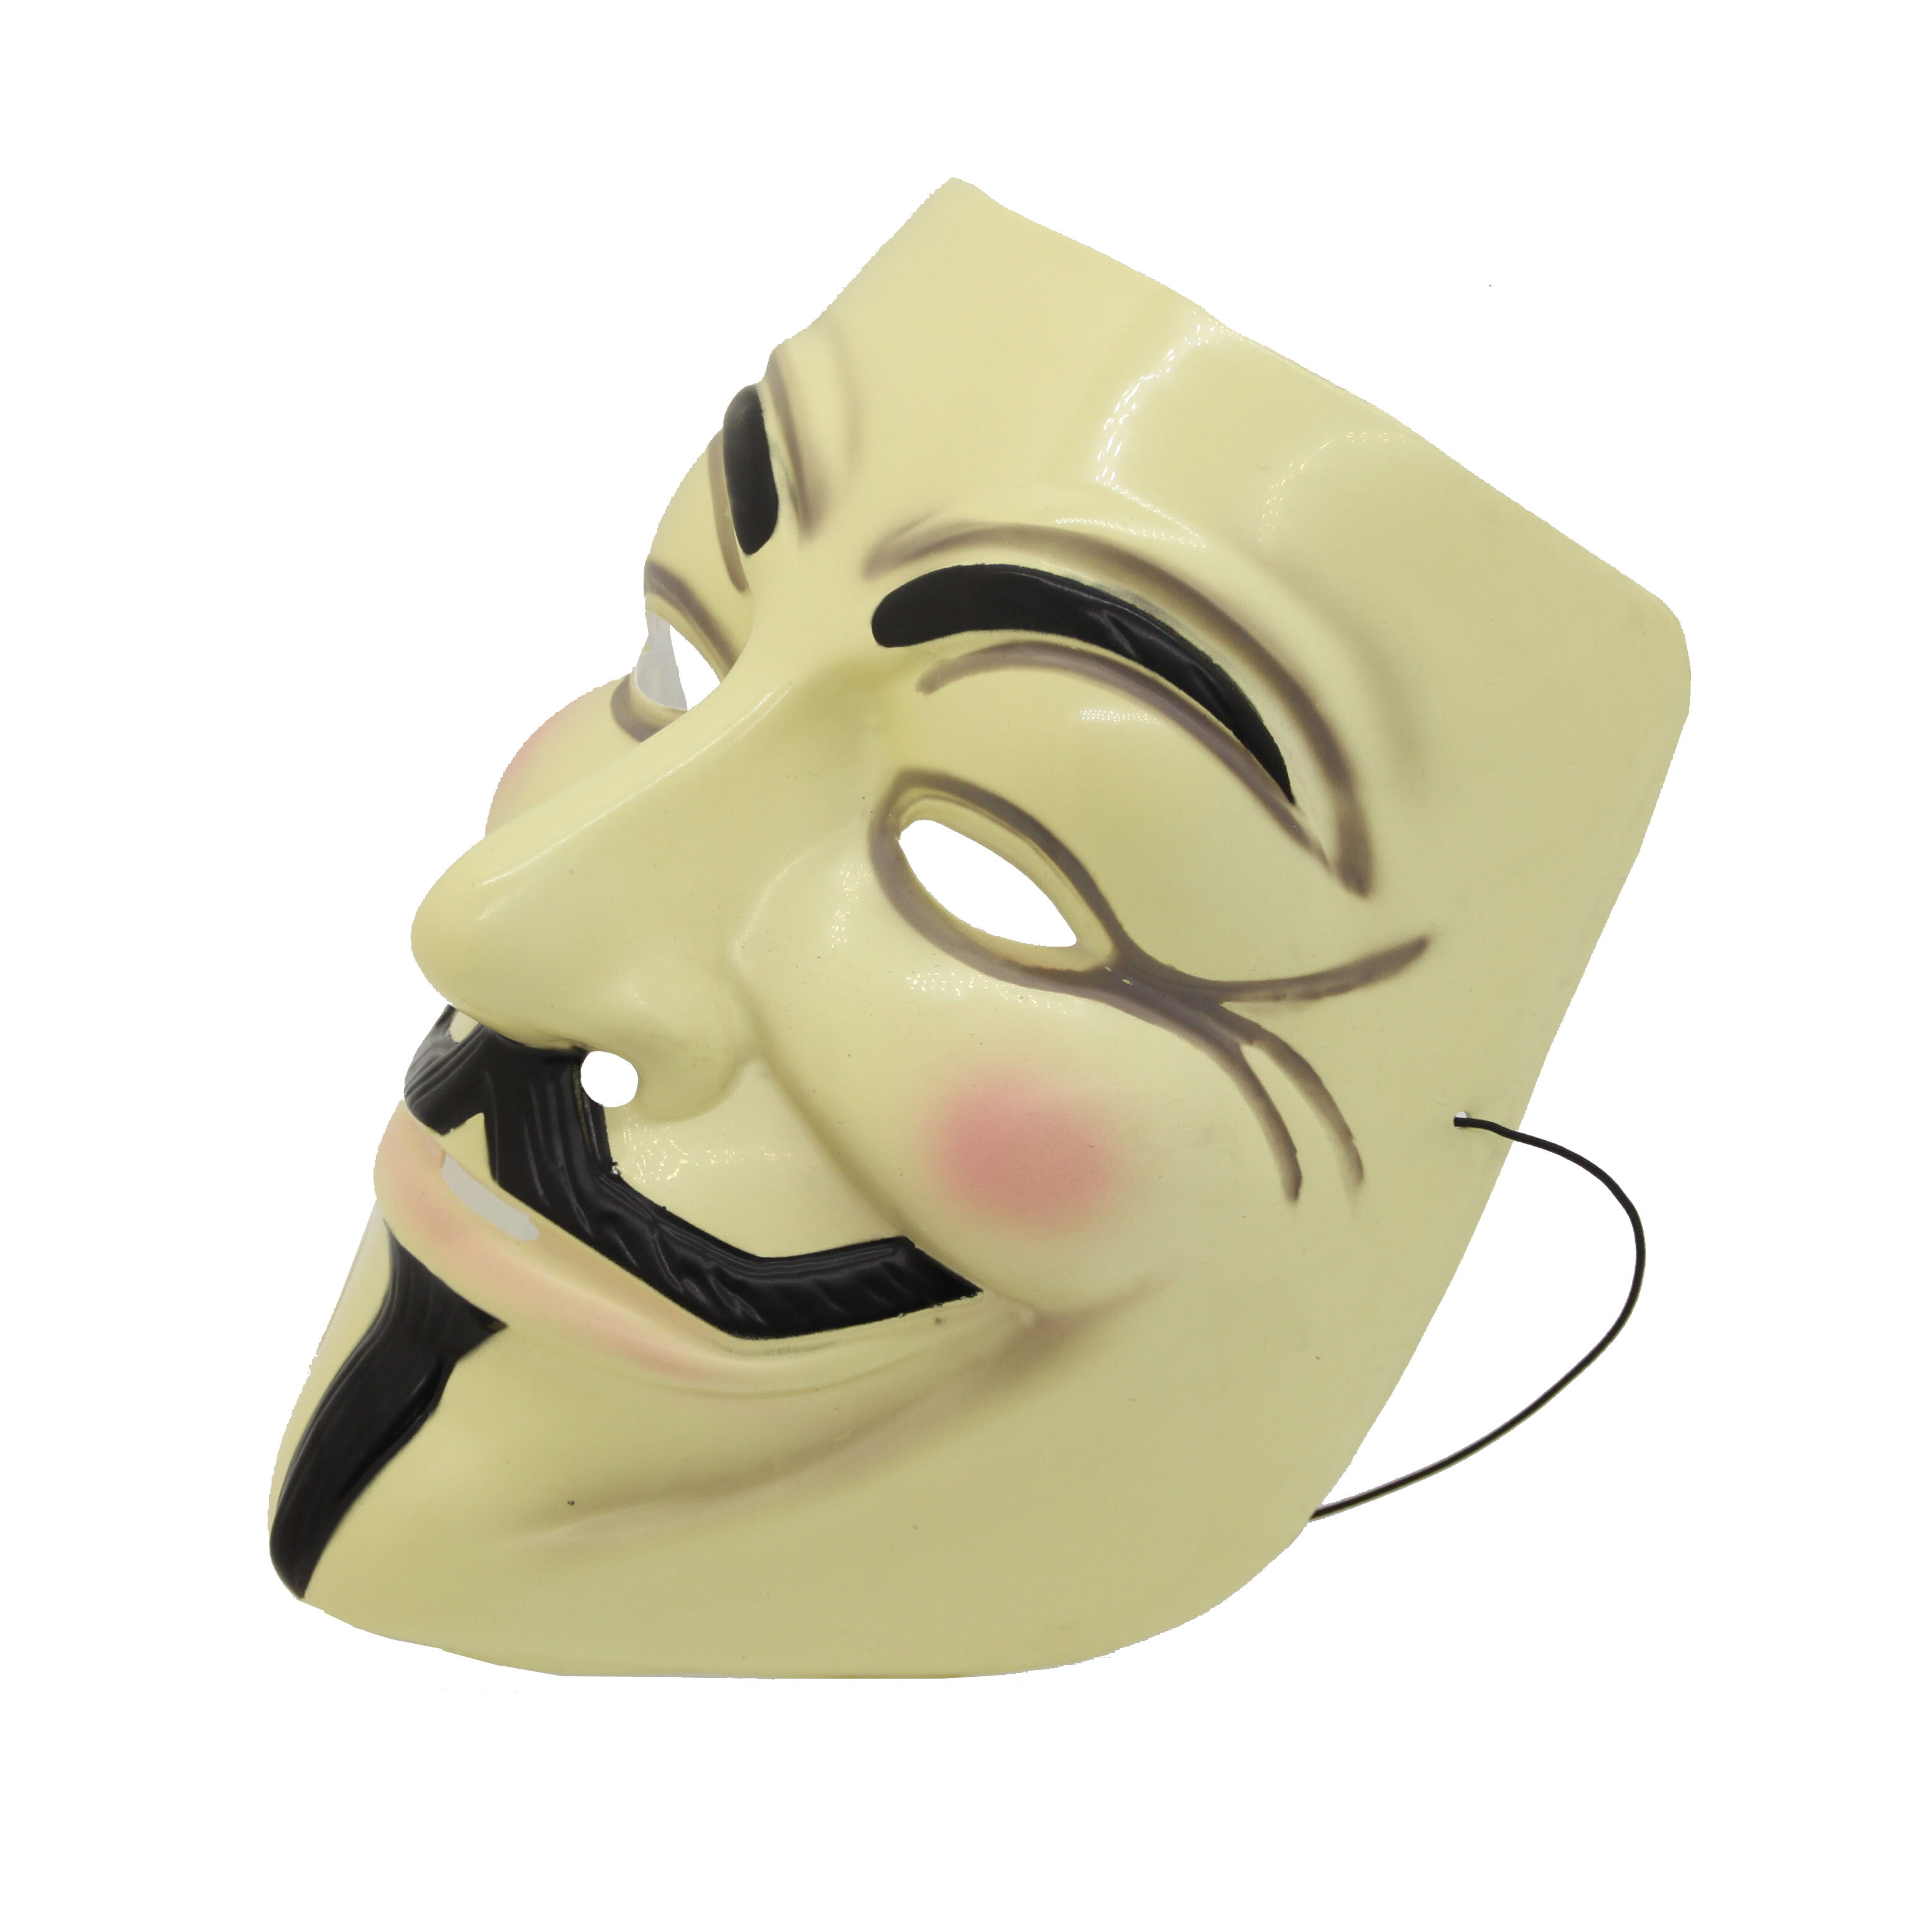 V for Vendetta Mask Guy Fawkes Anonymous Halloween Masks Fancy Dress  Costume